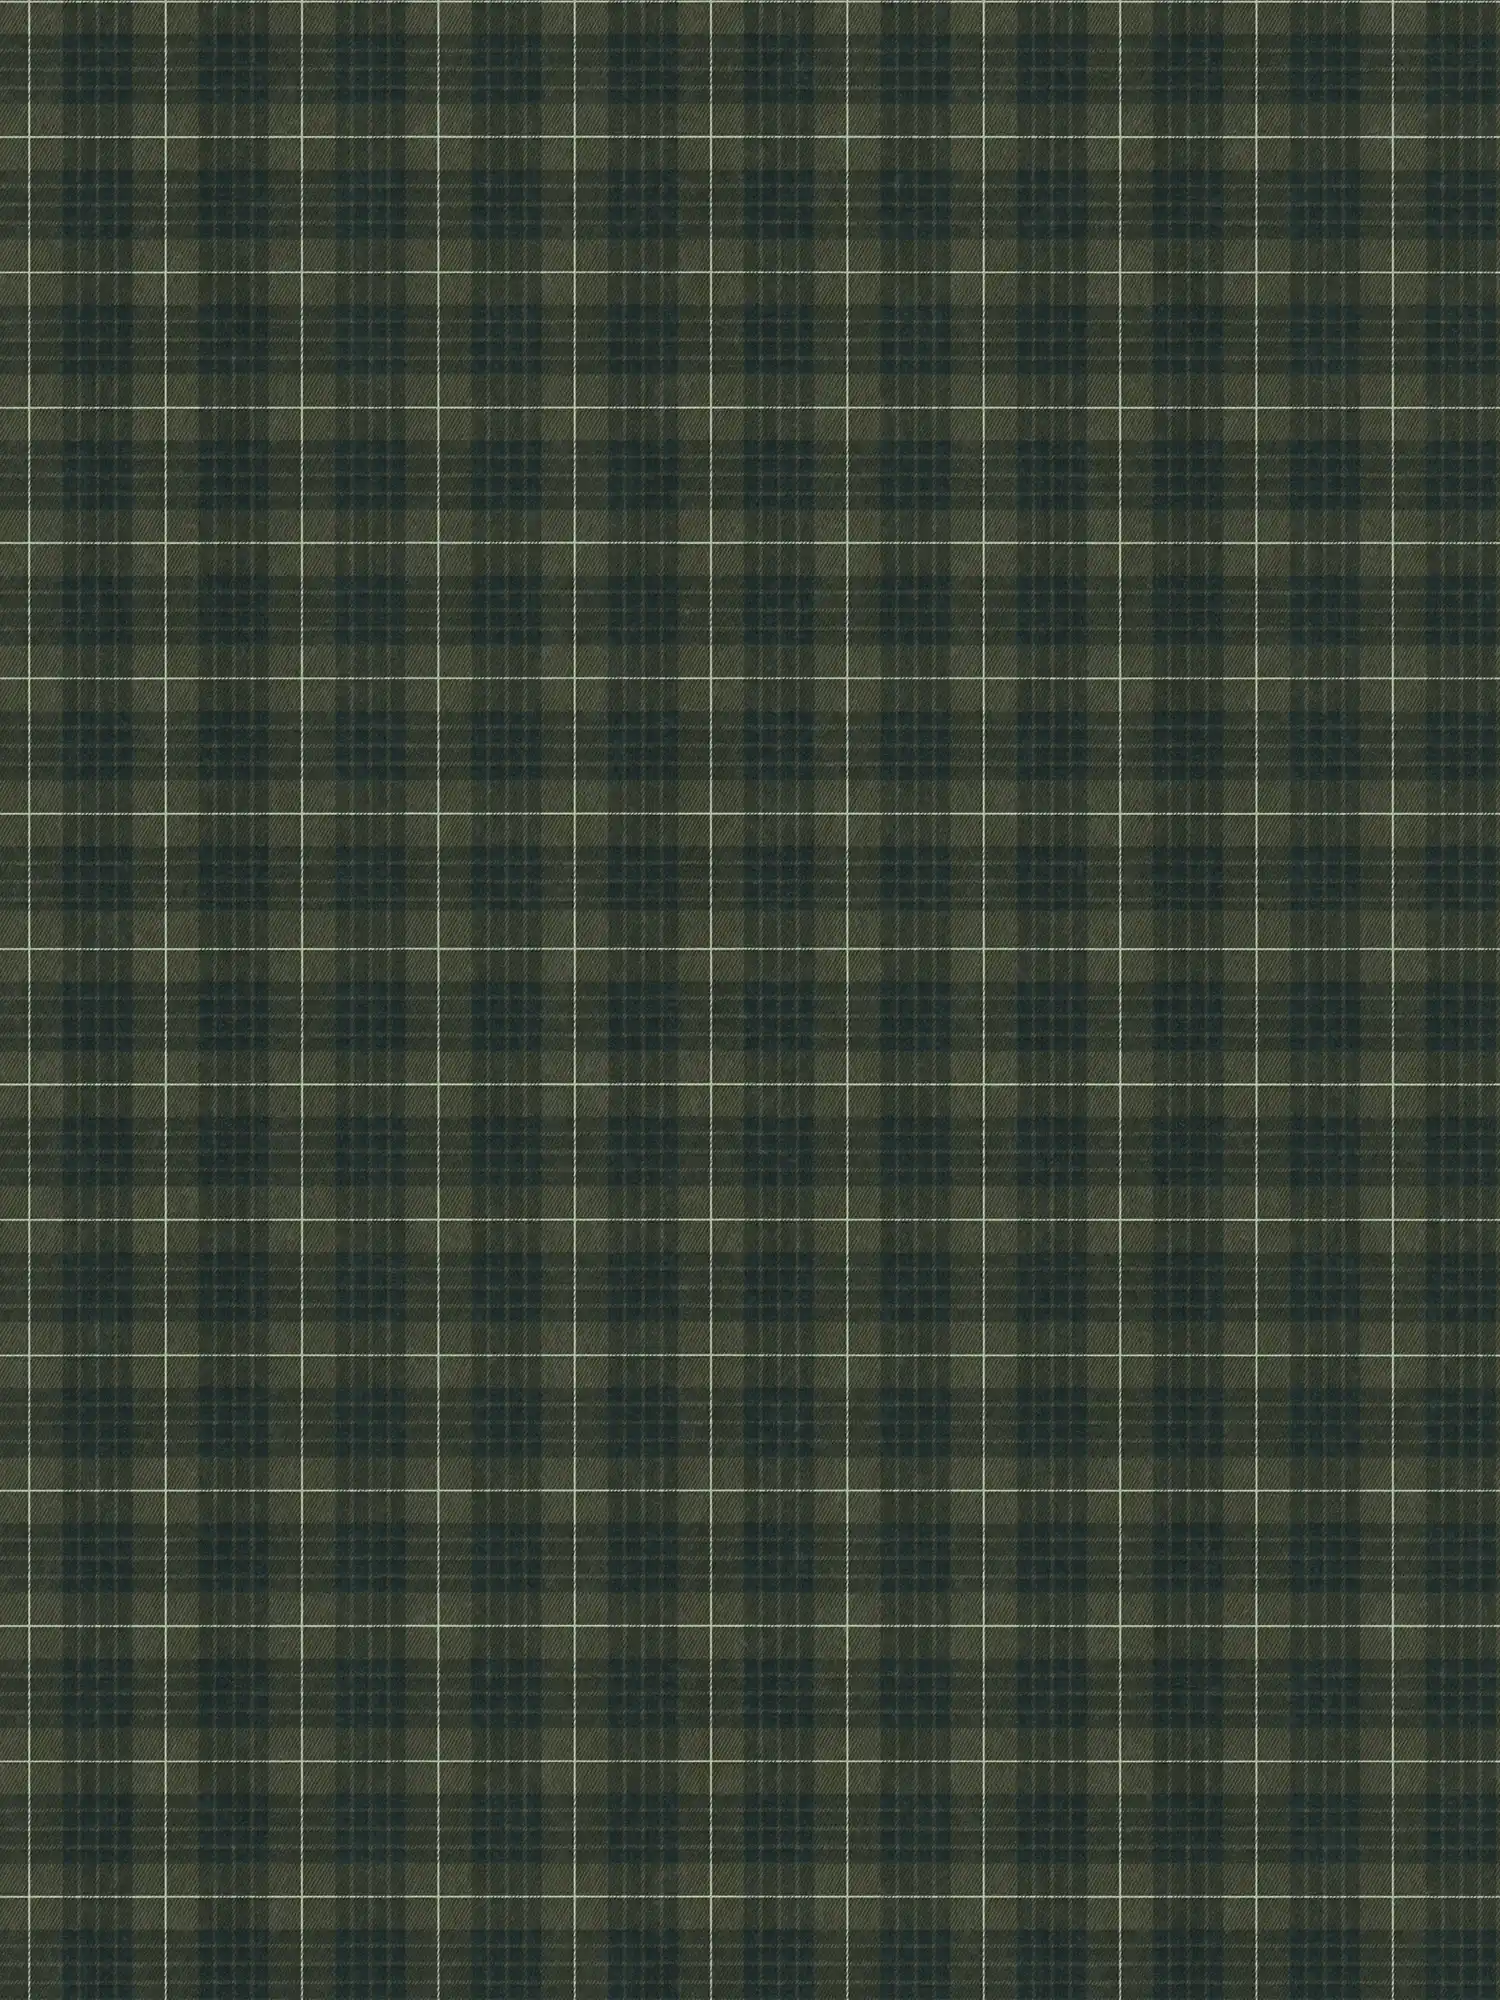         Textile look non-woven wallpaper with checkered tartan - green, black
    